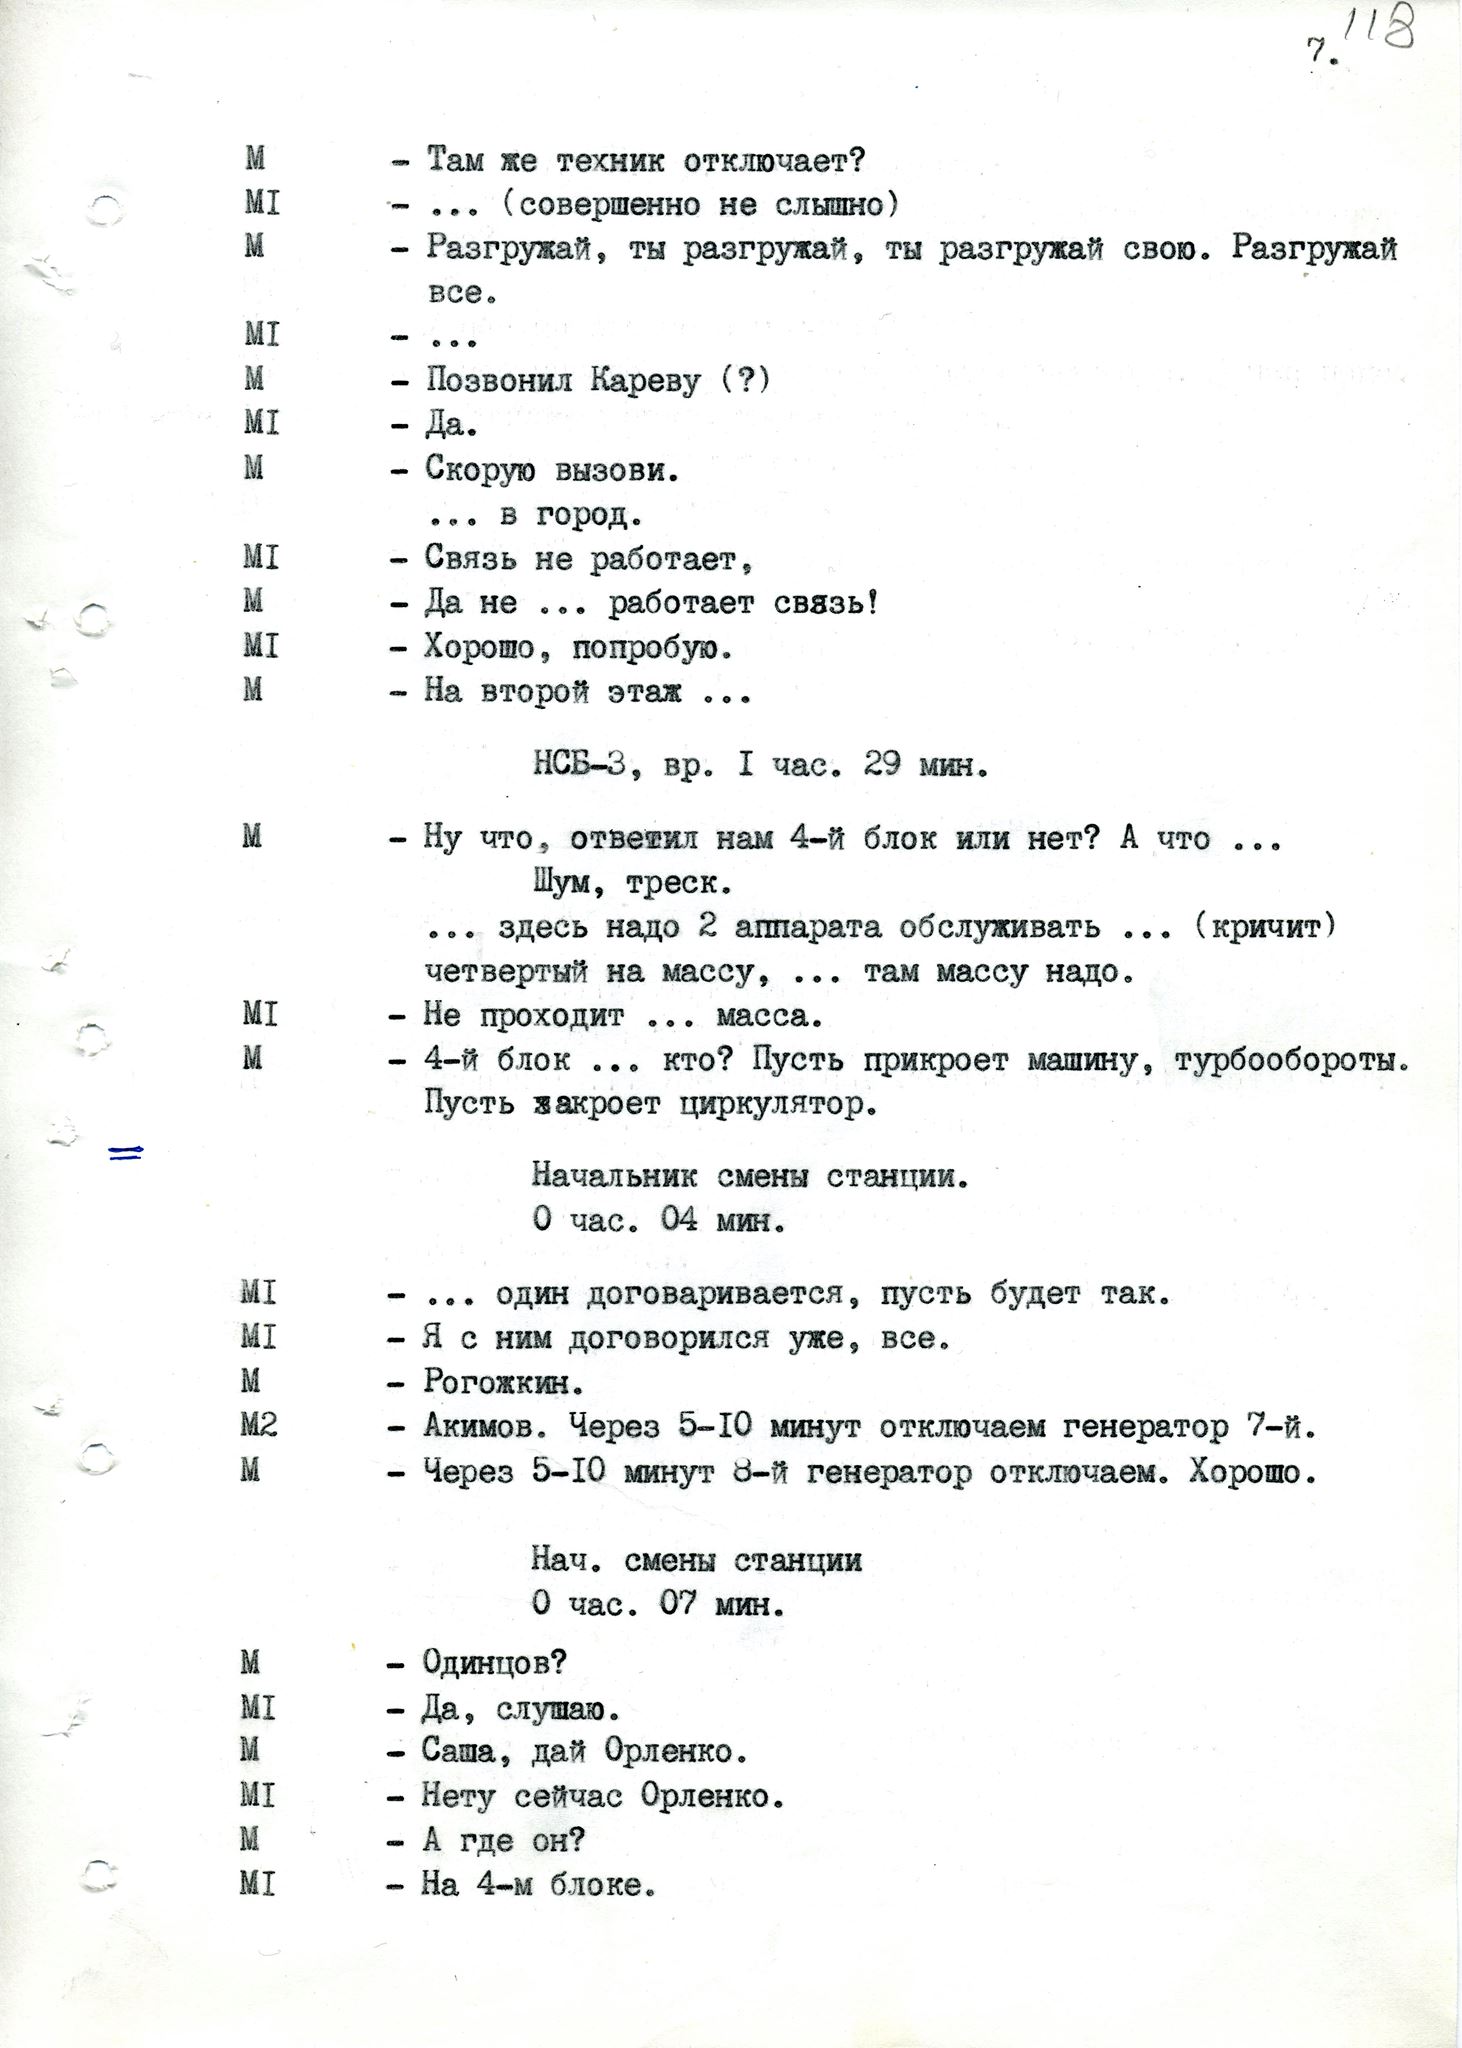 СБУ опубликовала рассекреченные документы об аварии на ЧАЭС. Среди них первый доклад о трагедии "наверх". Скриншот